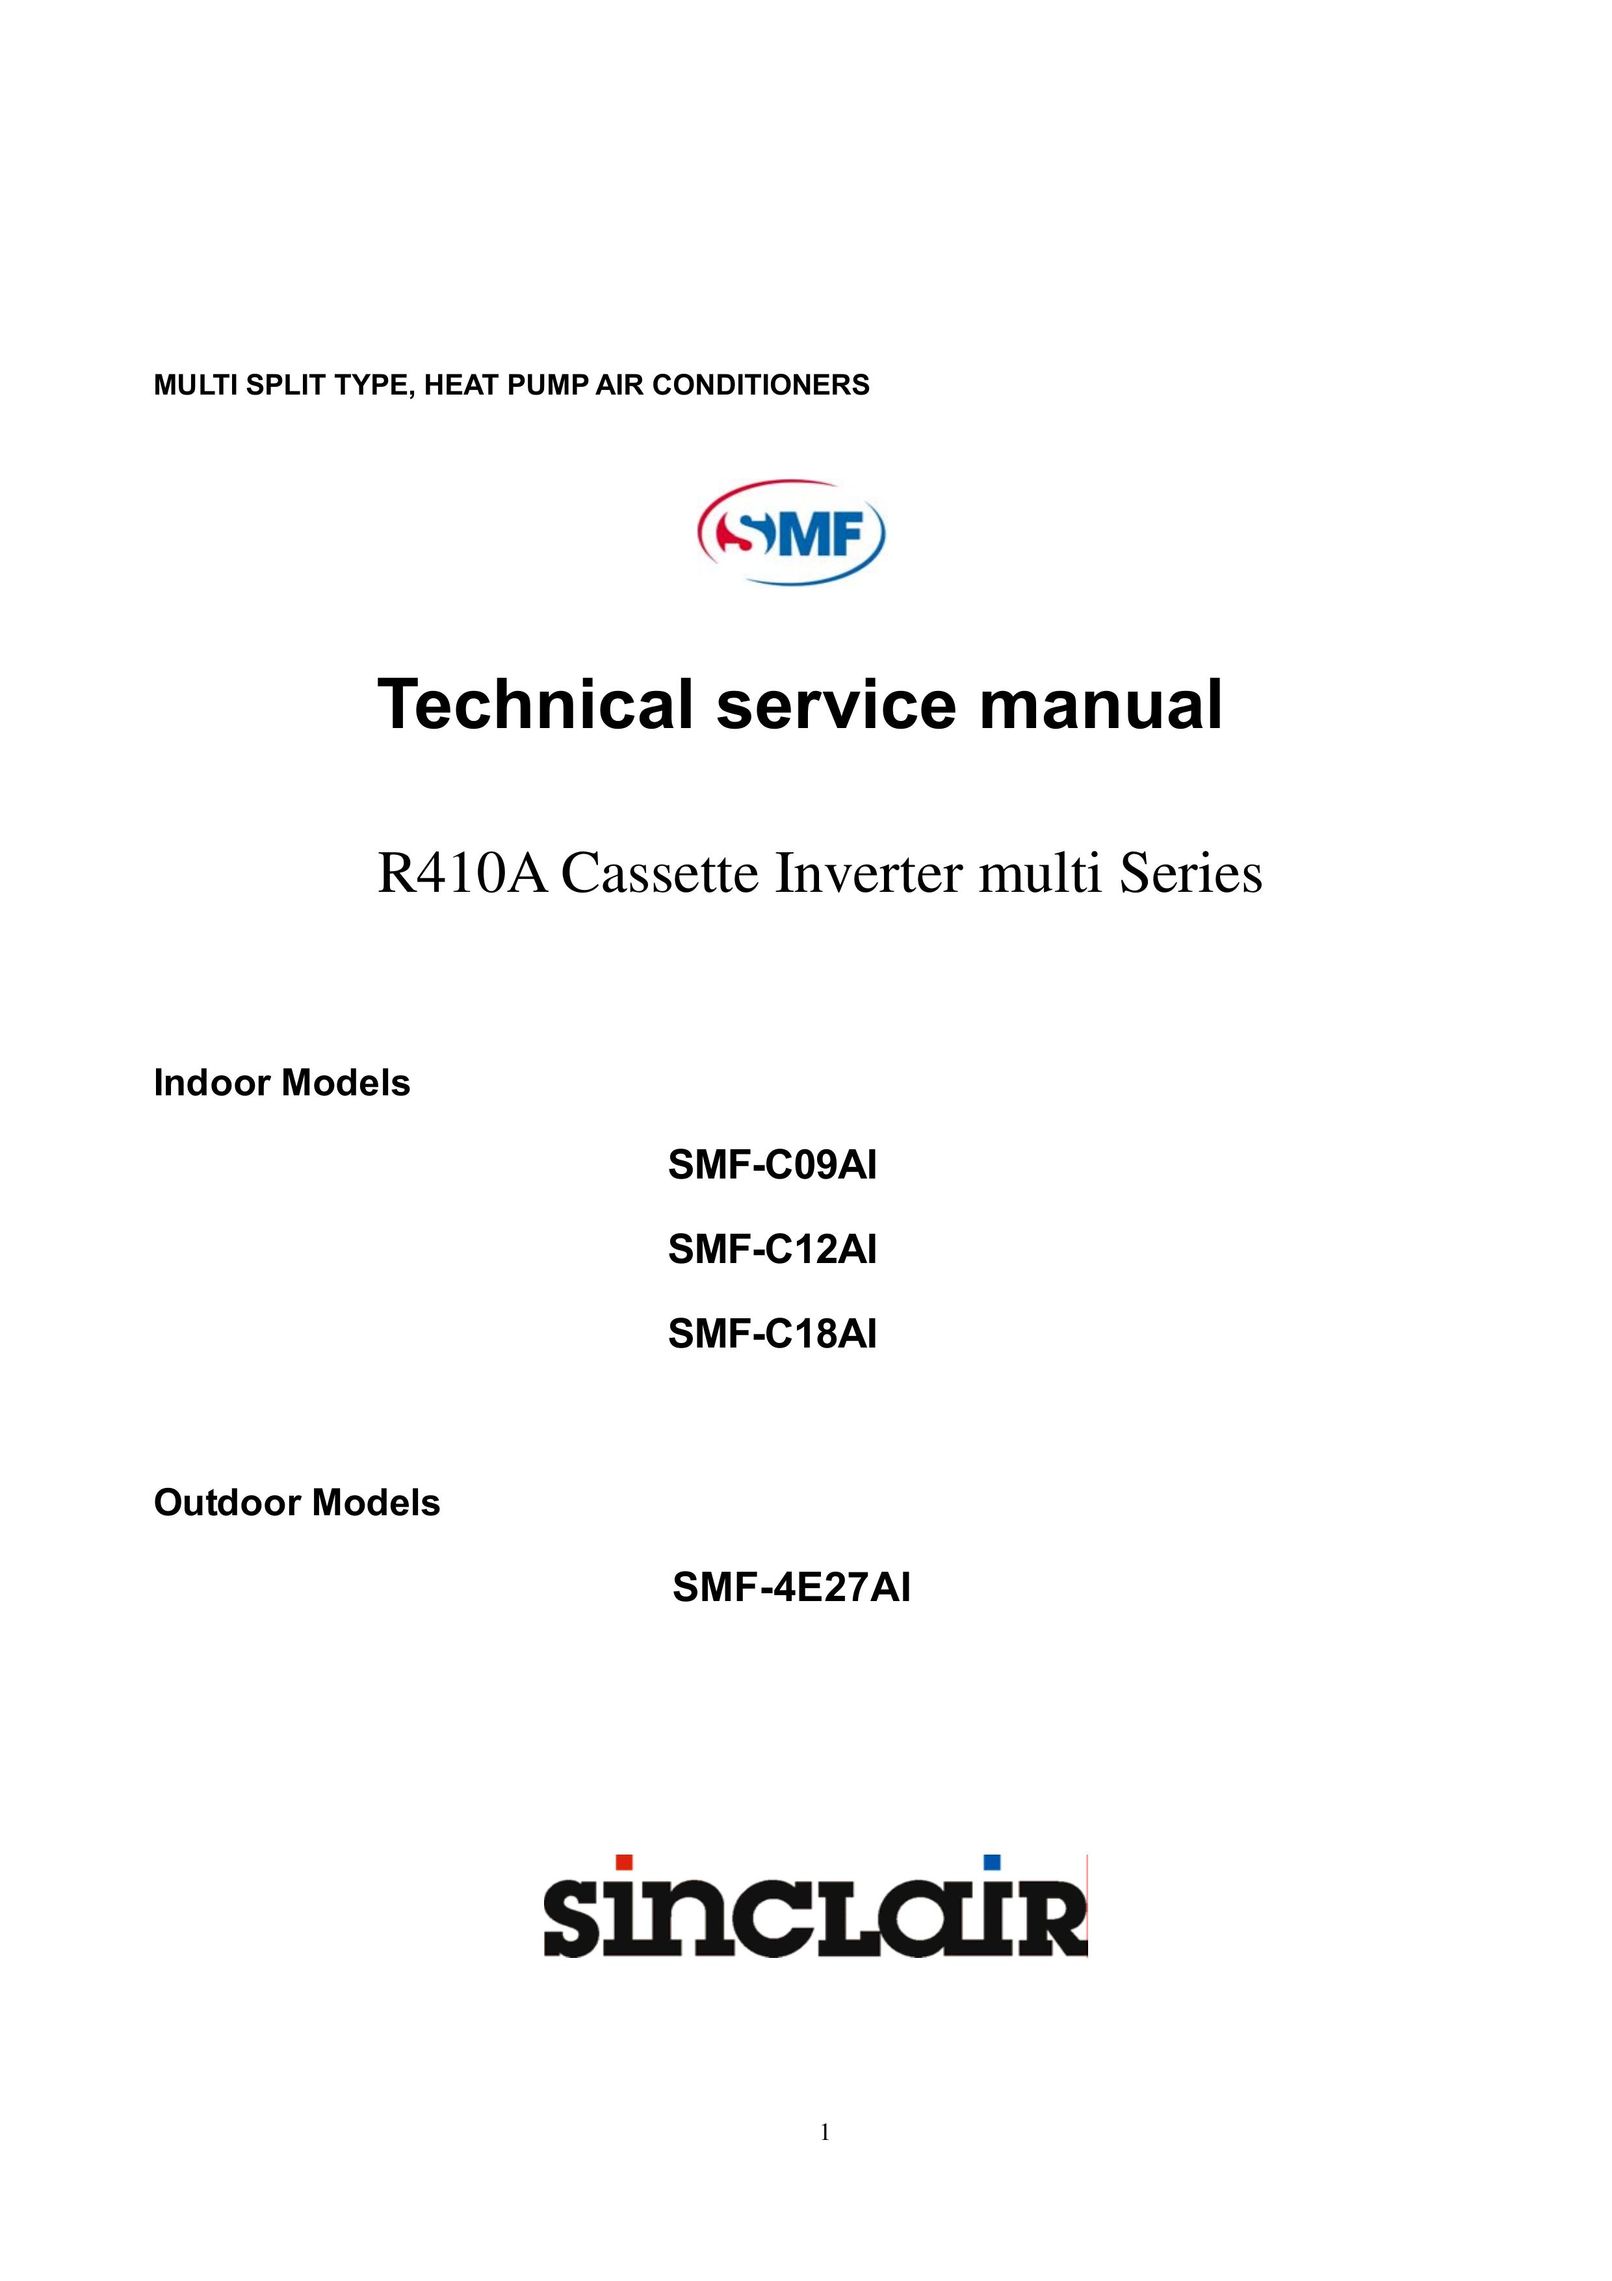 Sinclair SMF-C09AI Air Conditioner User Manual